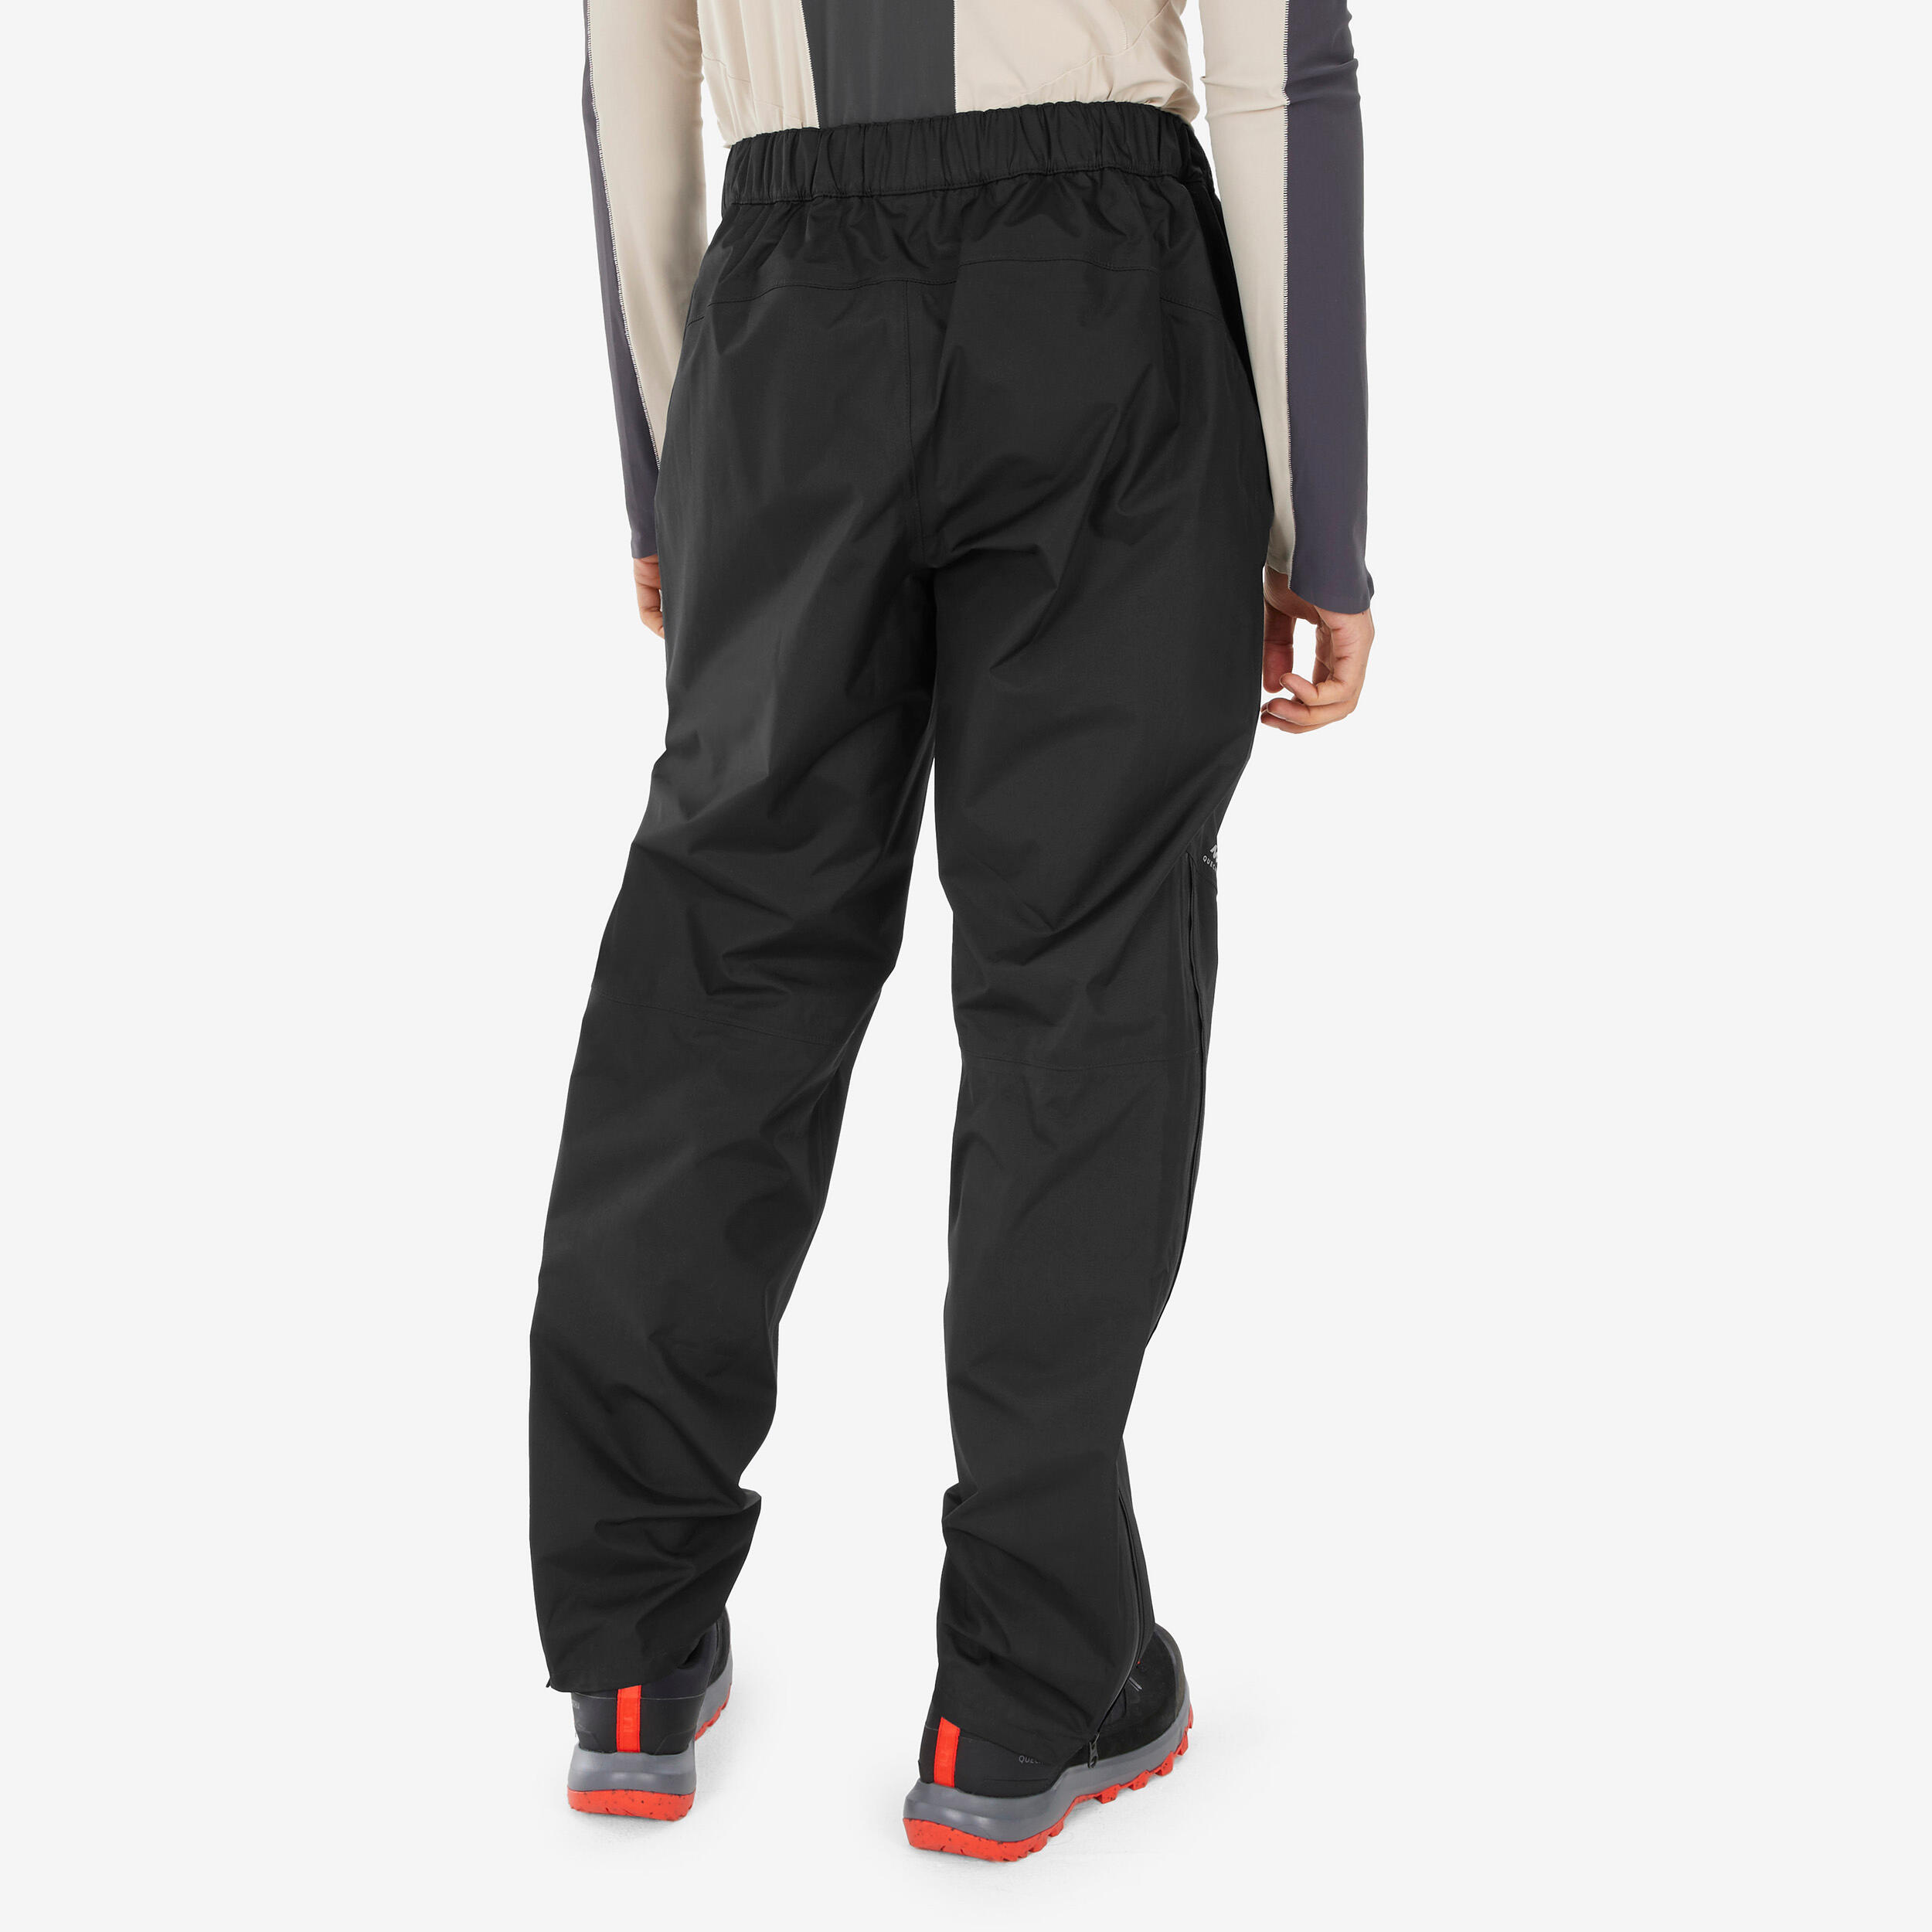 Pantalon de randonnée imperméable homme – MH 500 noir - QUECHUA